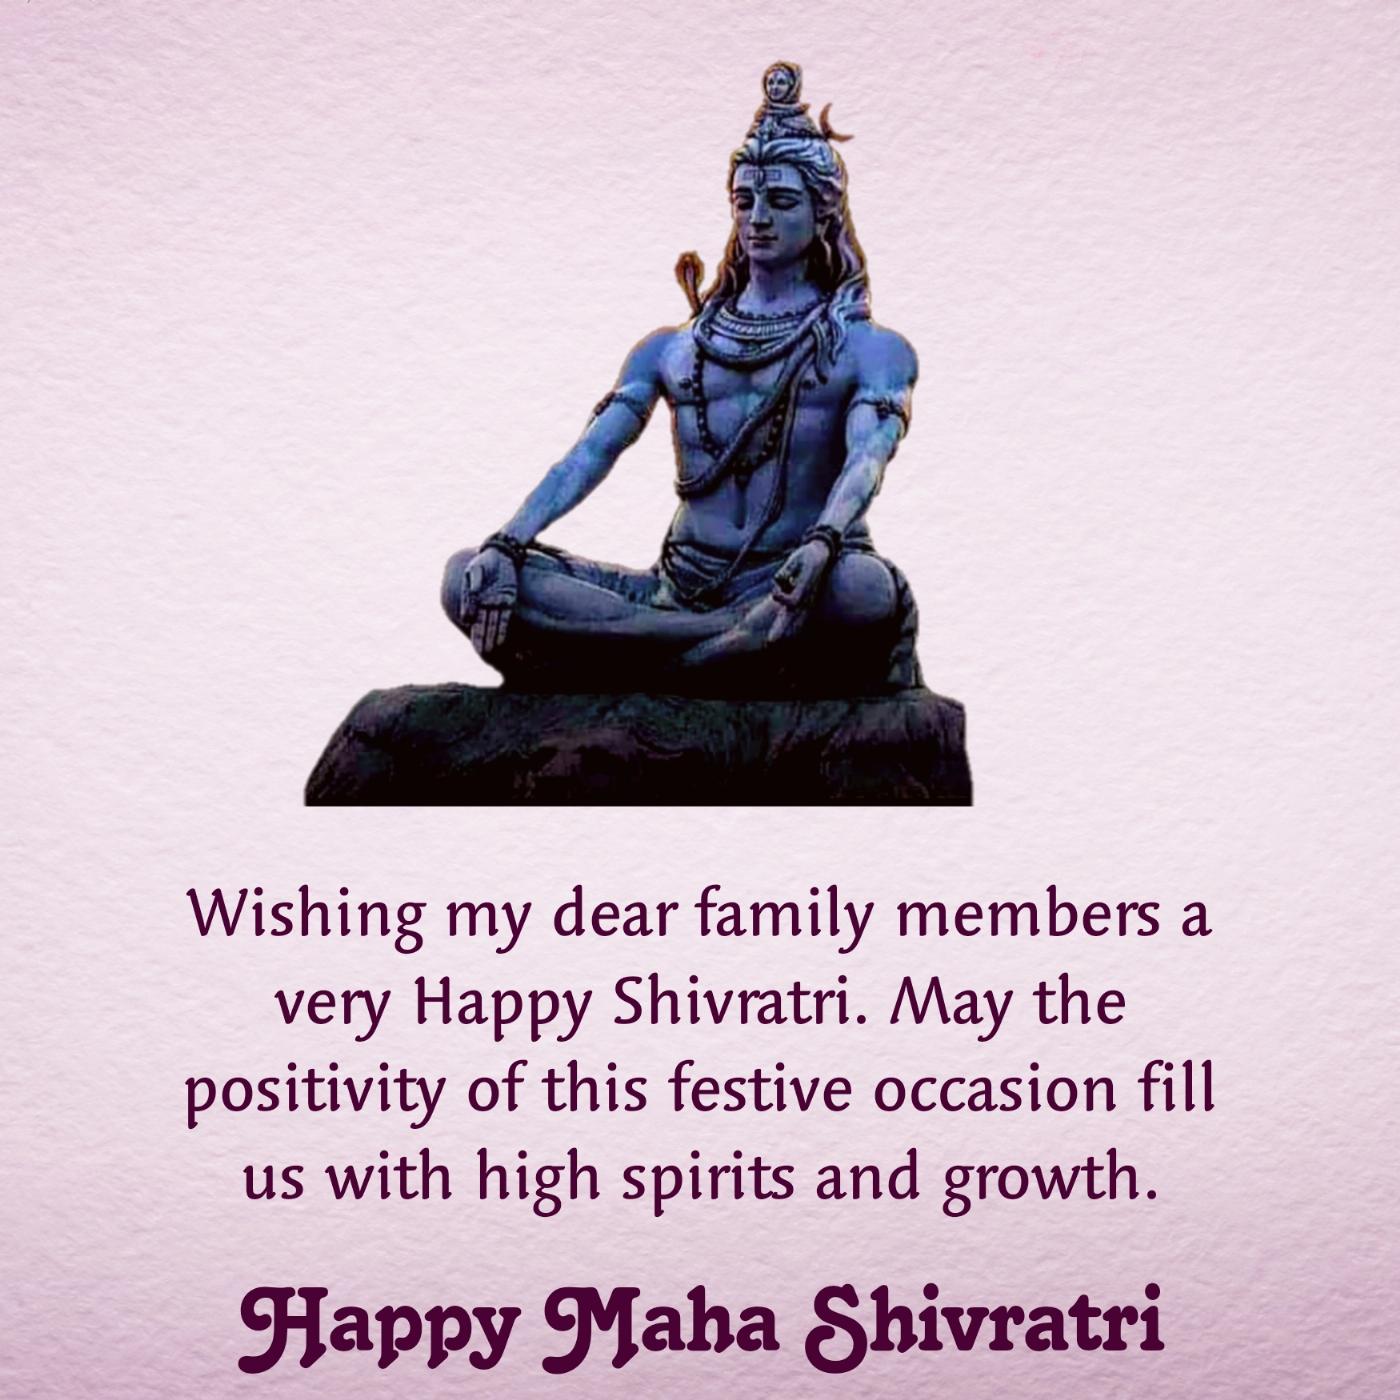 Wishing my dear family members a very Happy Shivratri